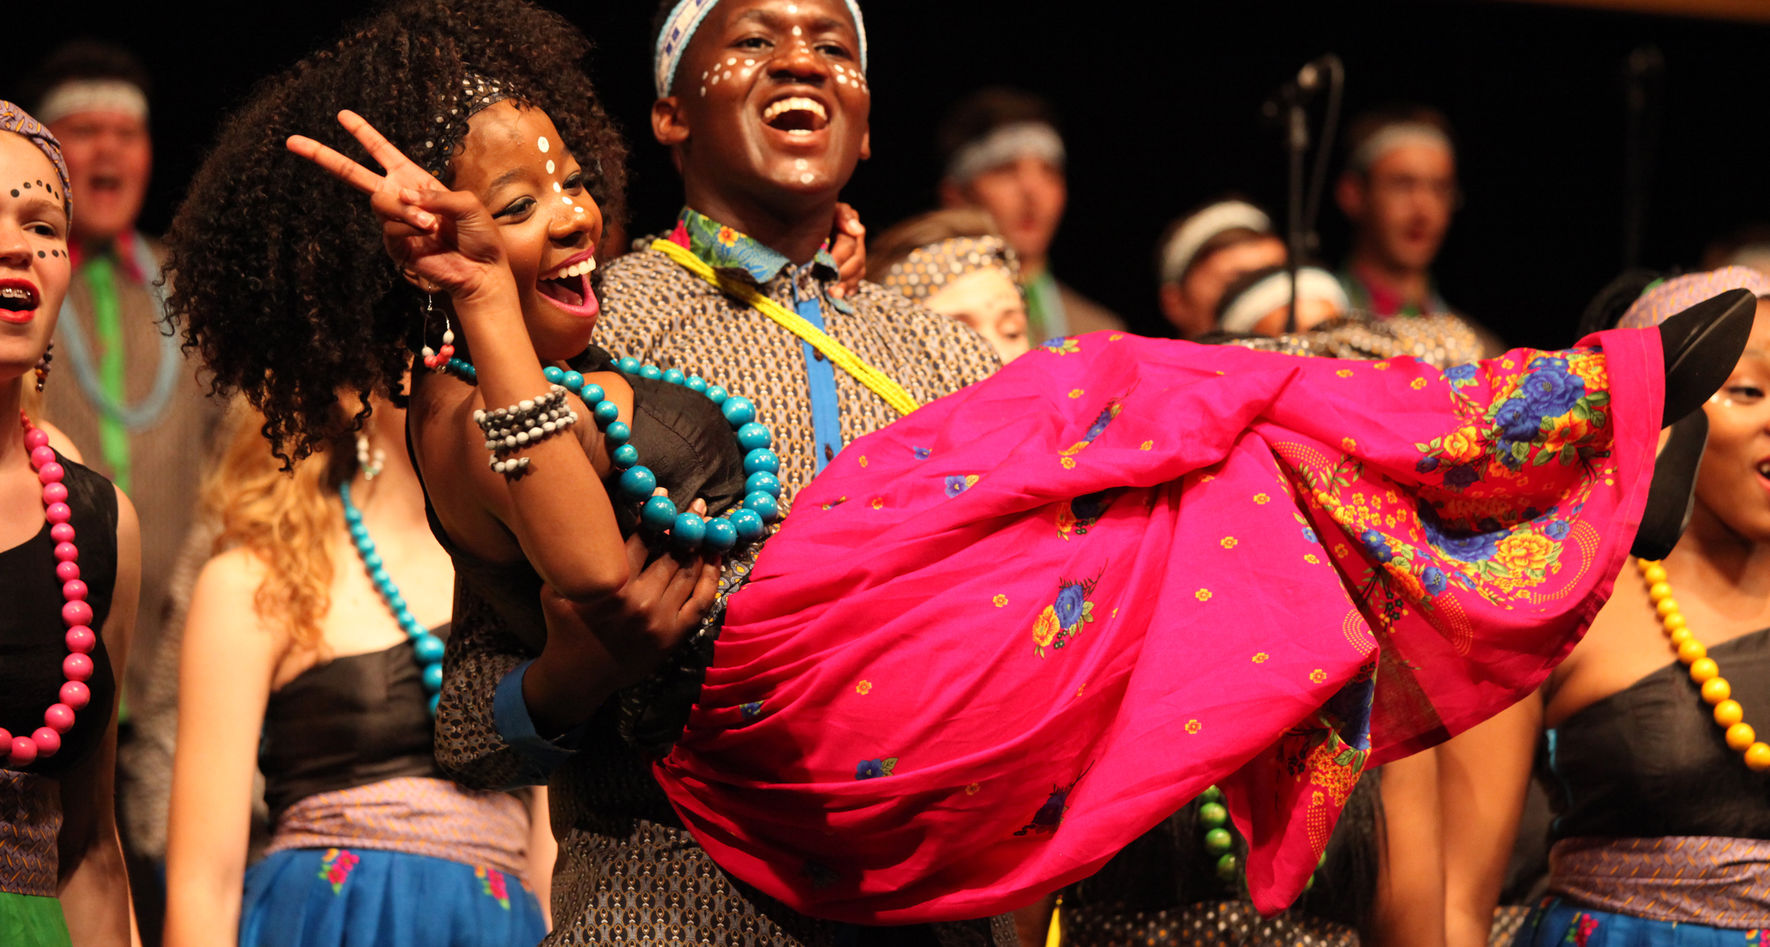 Südafrikanischer Chor auf der Bühne ©Studi43